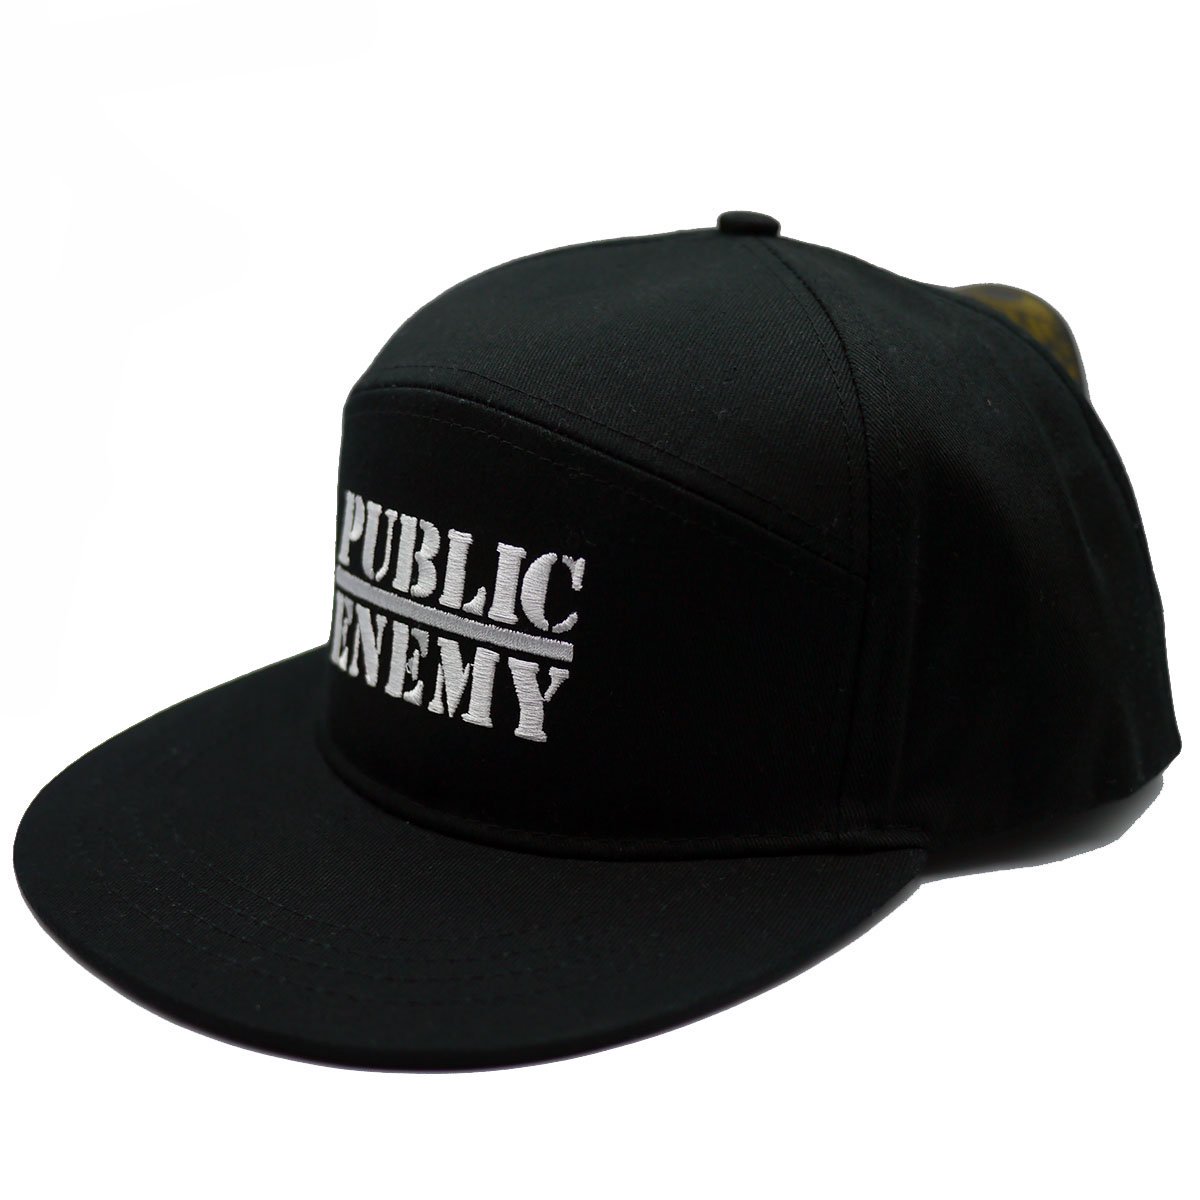 Public Enemy フラットビルスナップバックキャップ パブリック・エネミー Target BLACK - 記念品、思い出の品